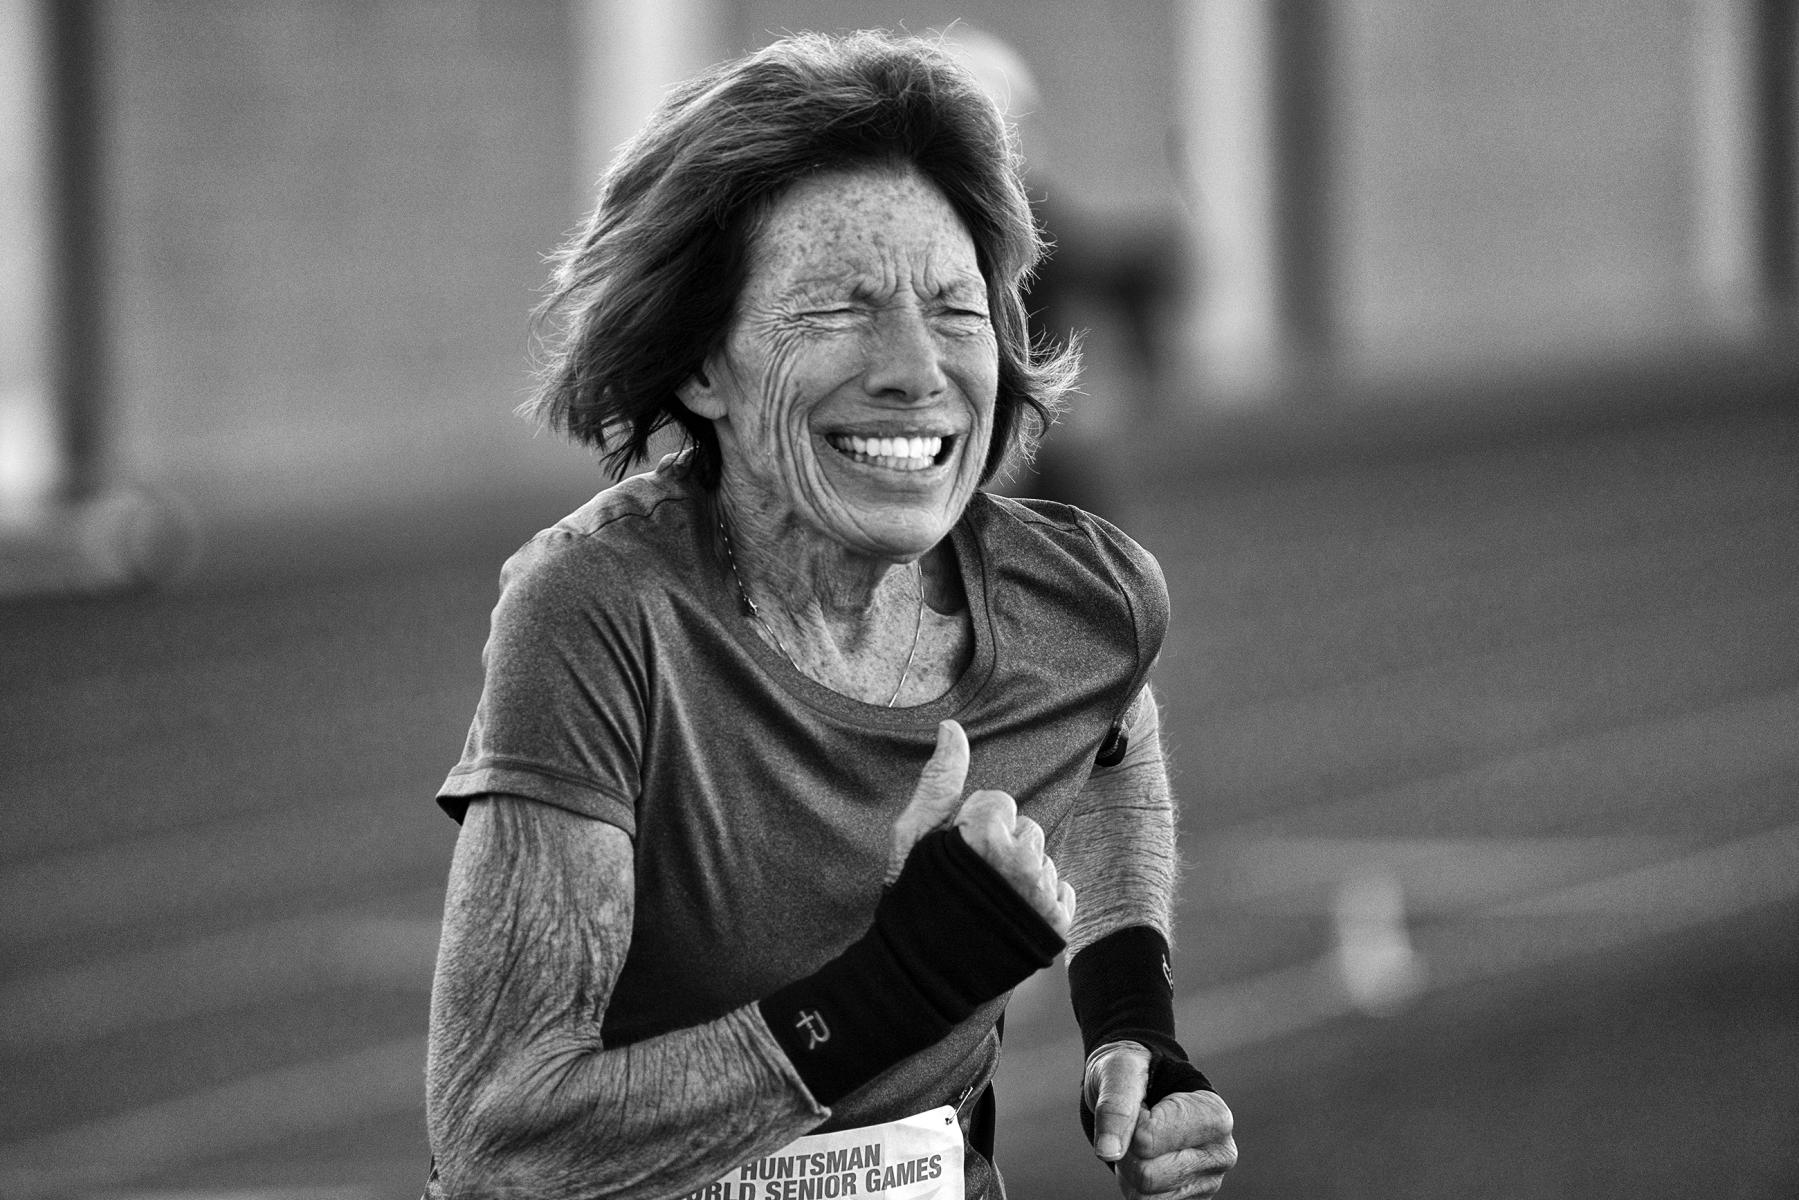 Walking or Running, its still a race : Senior Athletes : David Burnett | Photographer